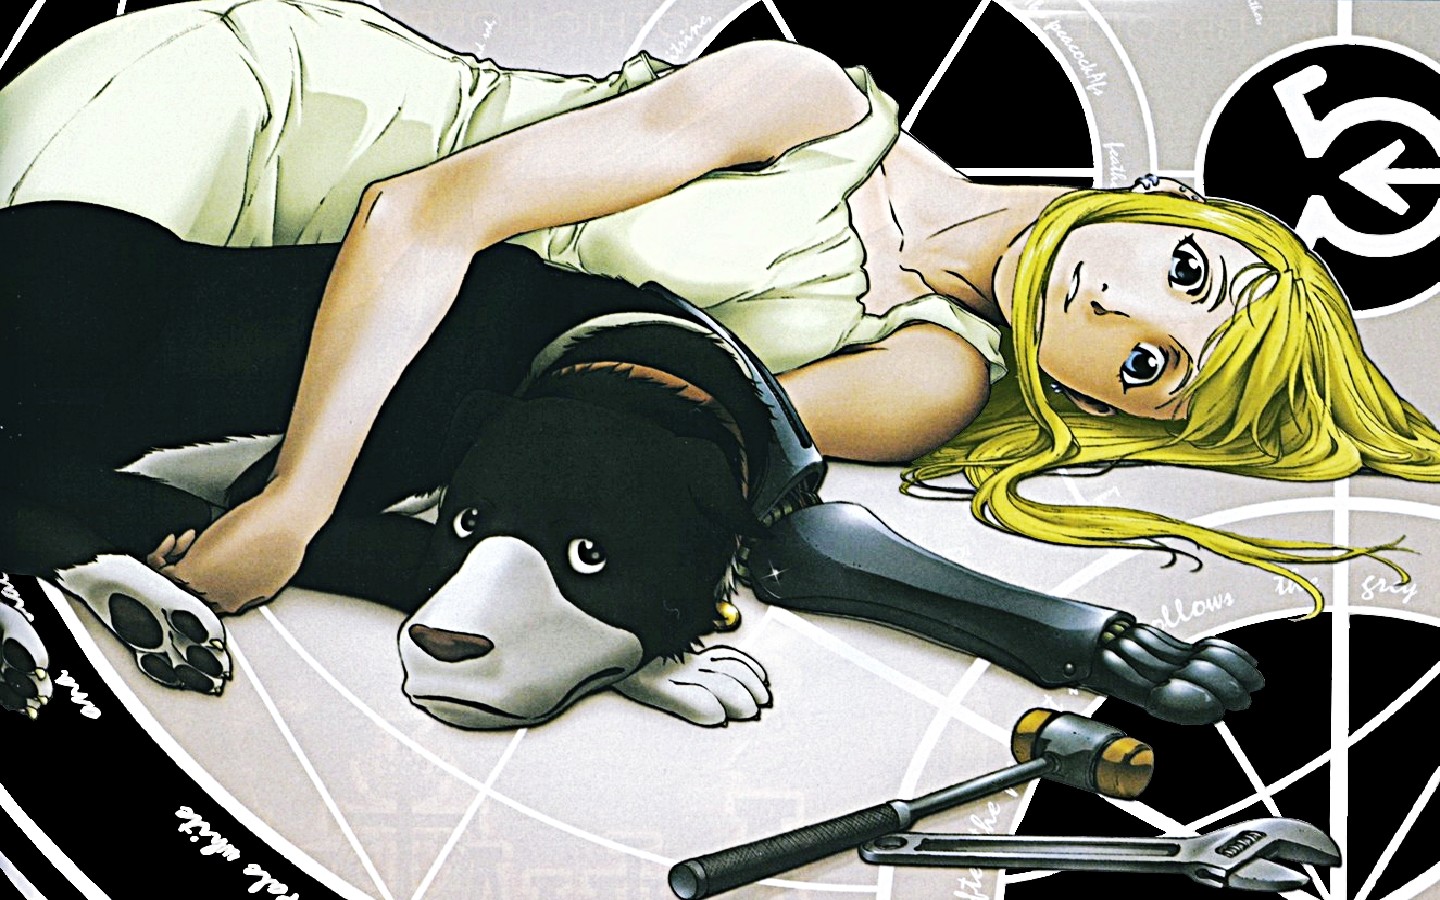 Download mobile wallpaper Anime, Fullmetal Alchemist, Winry Rockbell for free.